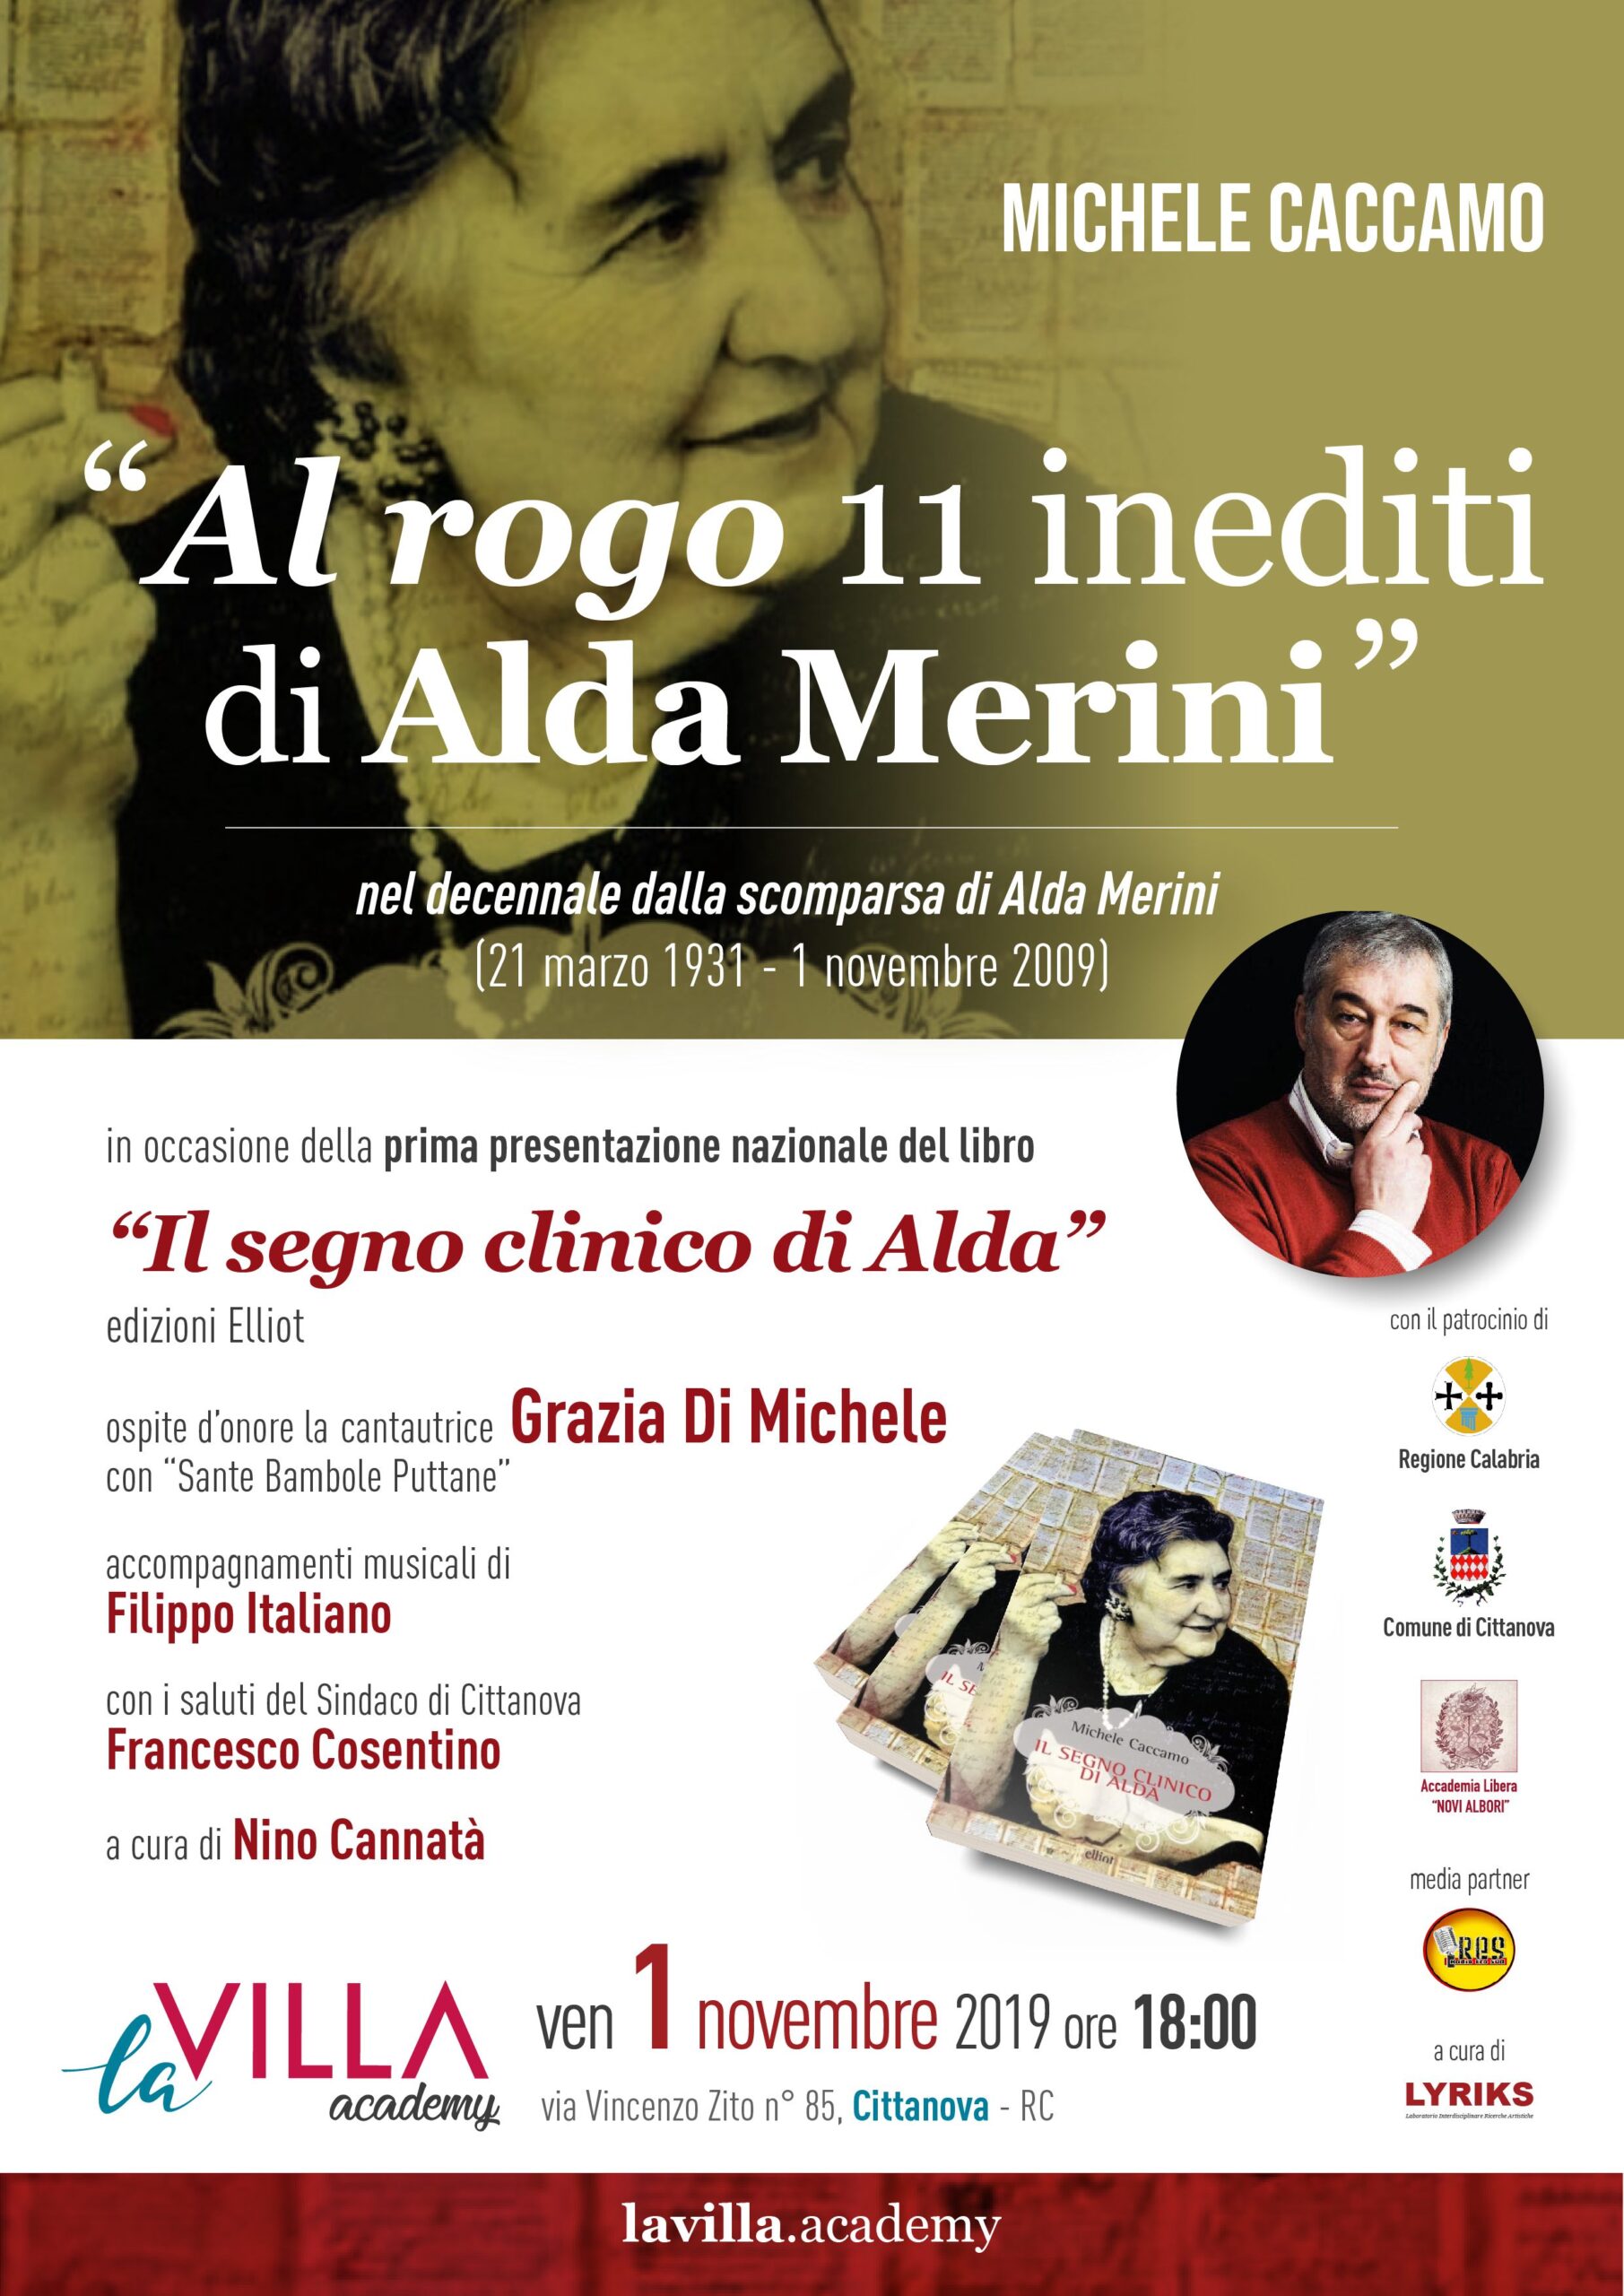 Michele Caccamo, Al rogo 11 inediti di Alda Merini